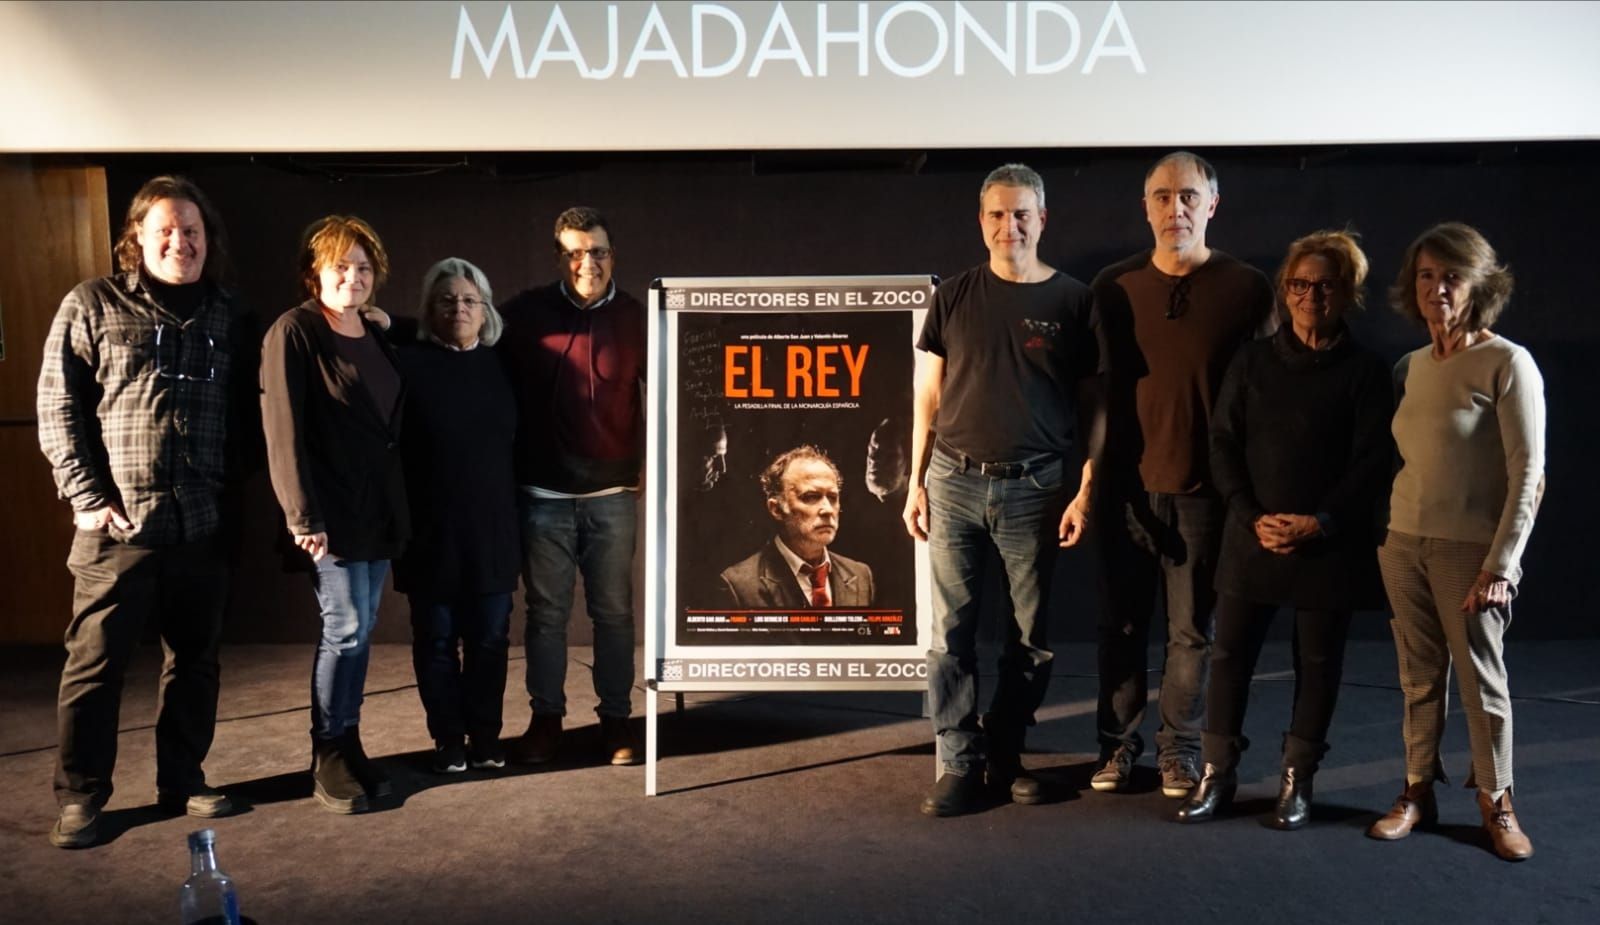 Cines Zoco Majadahonda desmiente un «fake» (bulo): la película «El Rey» no recibe ni «amenazas» ni «insultos»